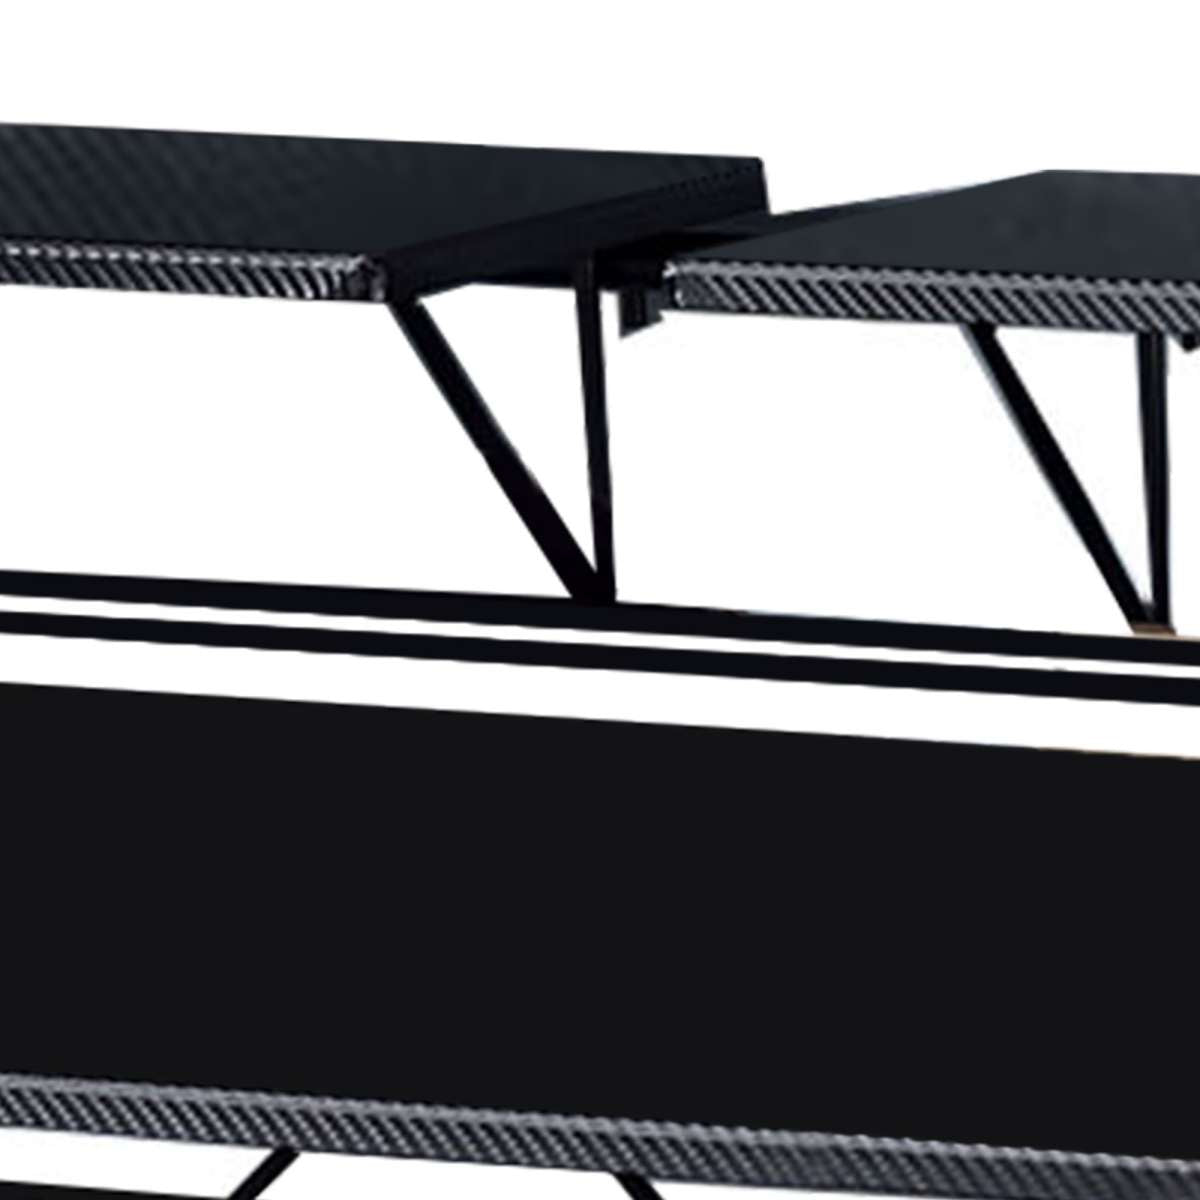 Tubular Metal Frame Computer Desk With 2 Shelves And Cup Holder, Black By Benzara | Desks |  Modishstore  - 3